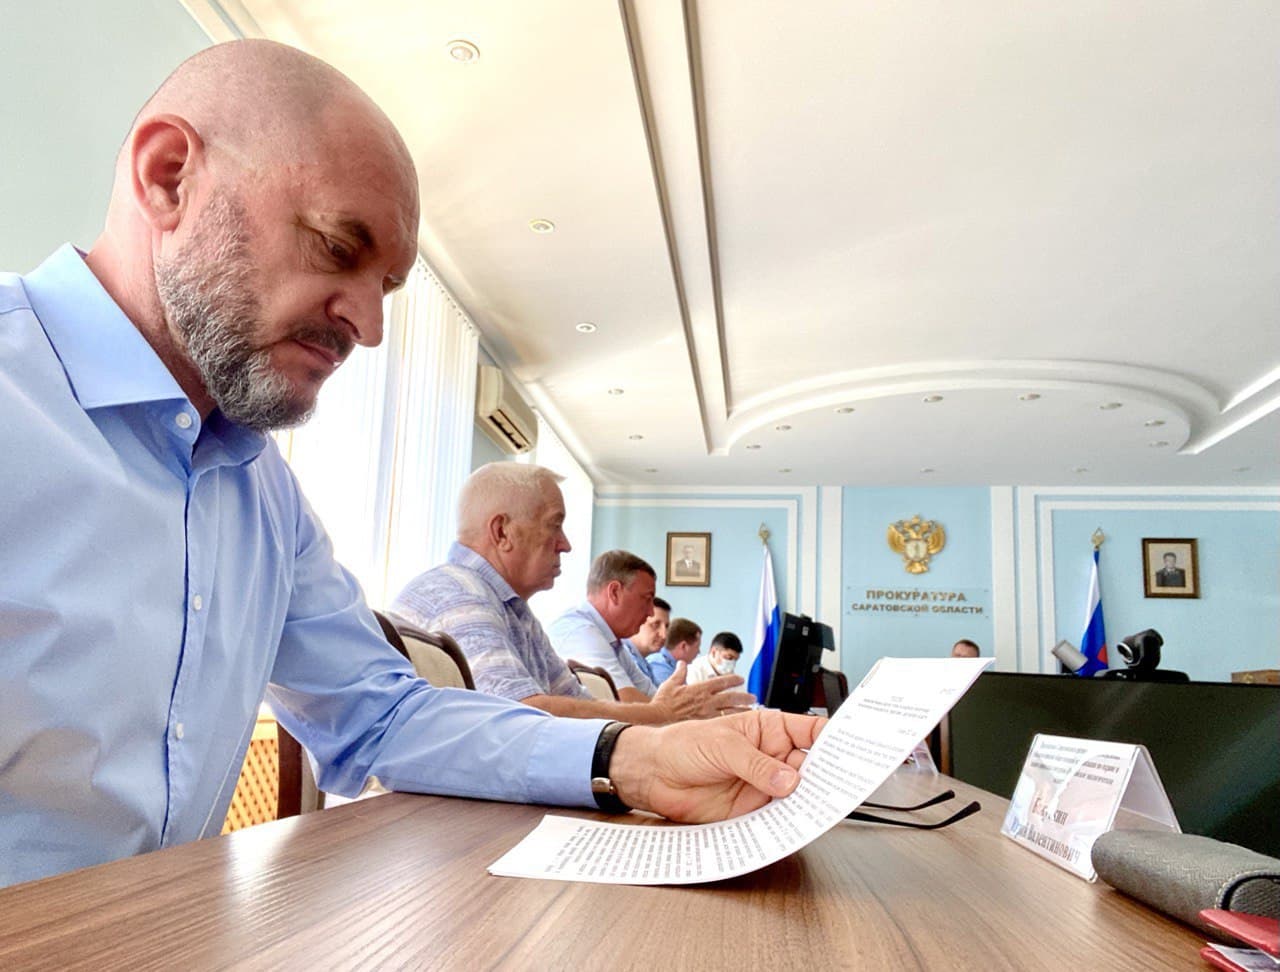 Юрий Бажуткин вошел в состав межведомственной рабочей группы по вопросам обеспечения экологической безопасности при Прокуратуре Саратовской области